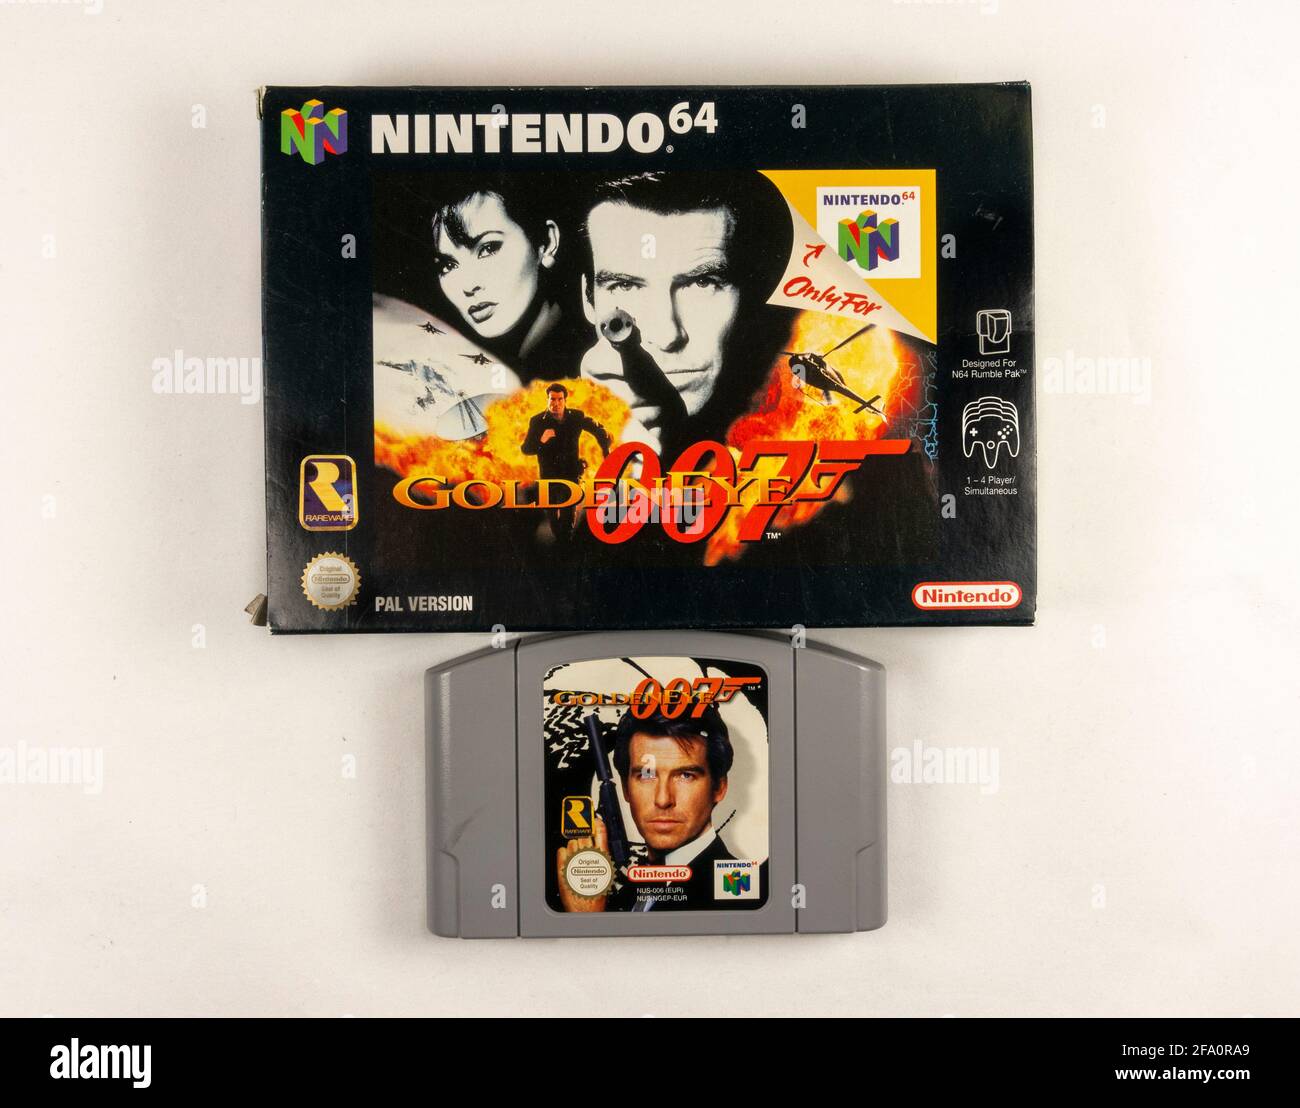 La cartouche et la boîte de jeux vidéo 'Goldeneye 007' Nintendo 64 ou N64, une console de jeux vidéo de cinquième génération lancée en 1996 au Japon. Banque D'Images